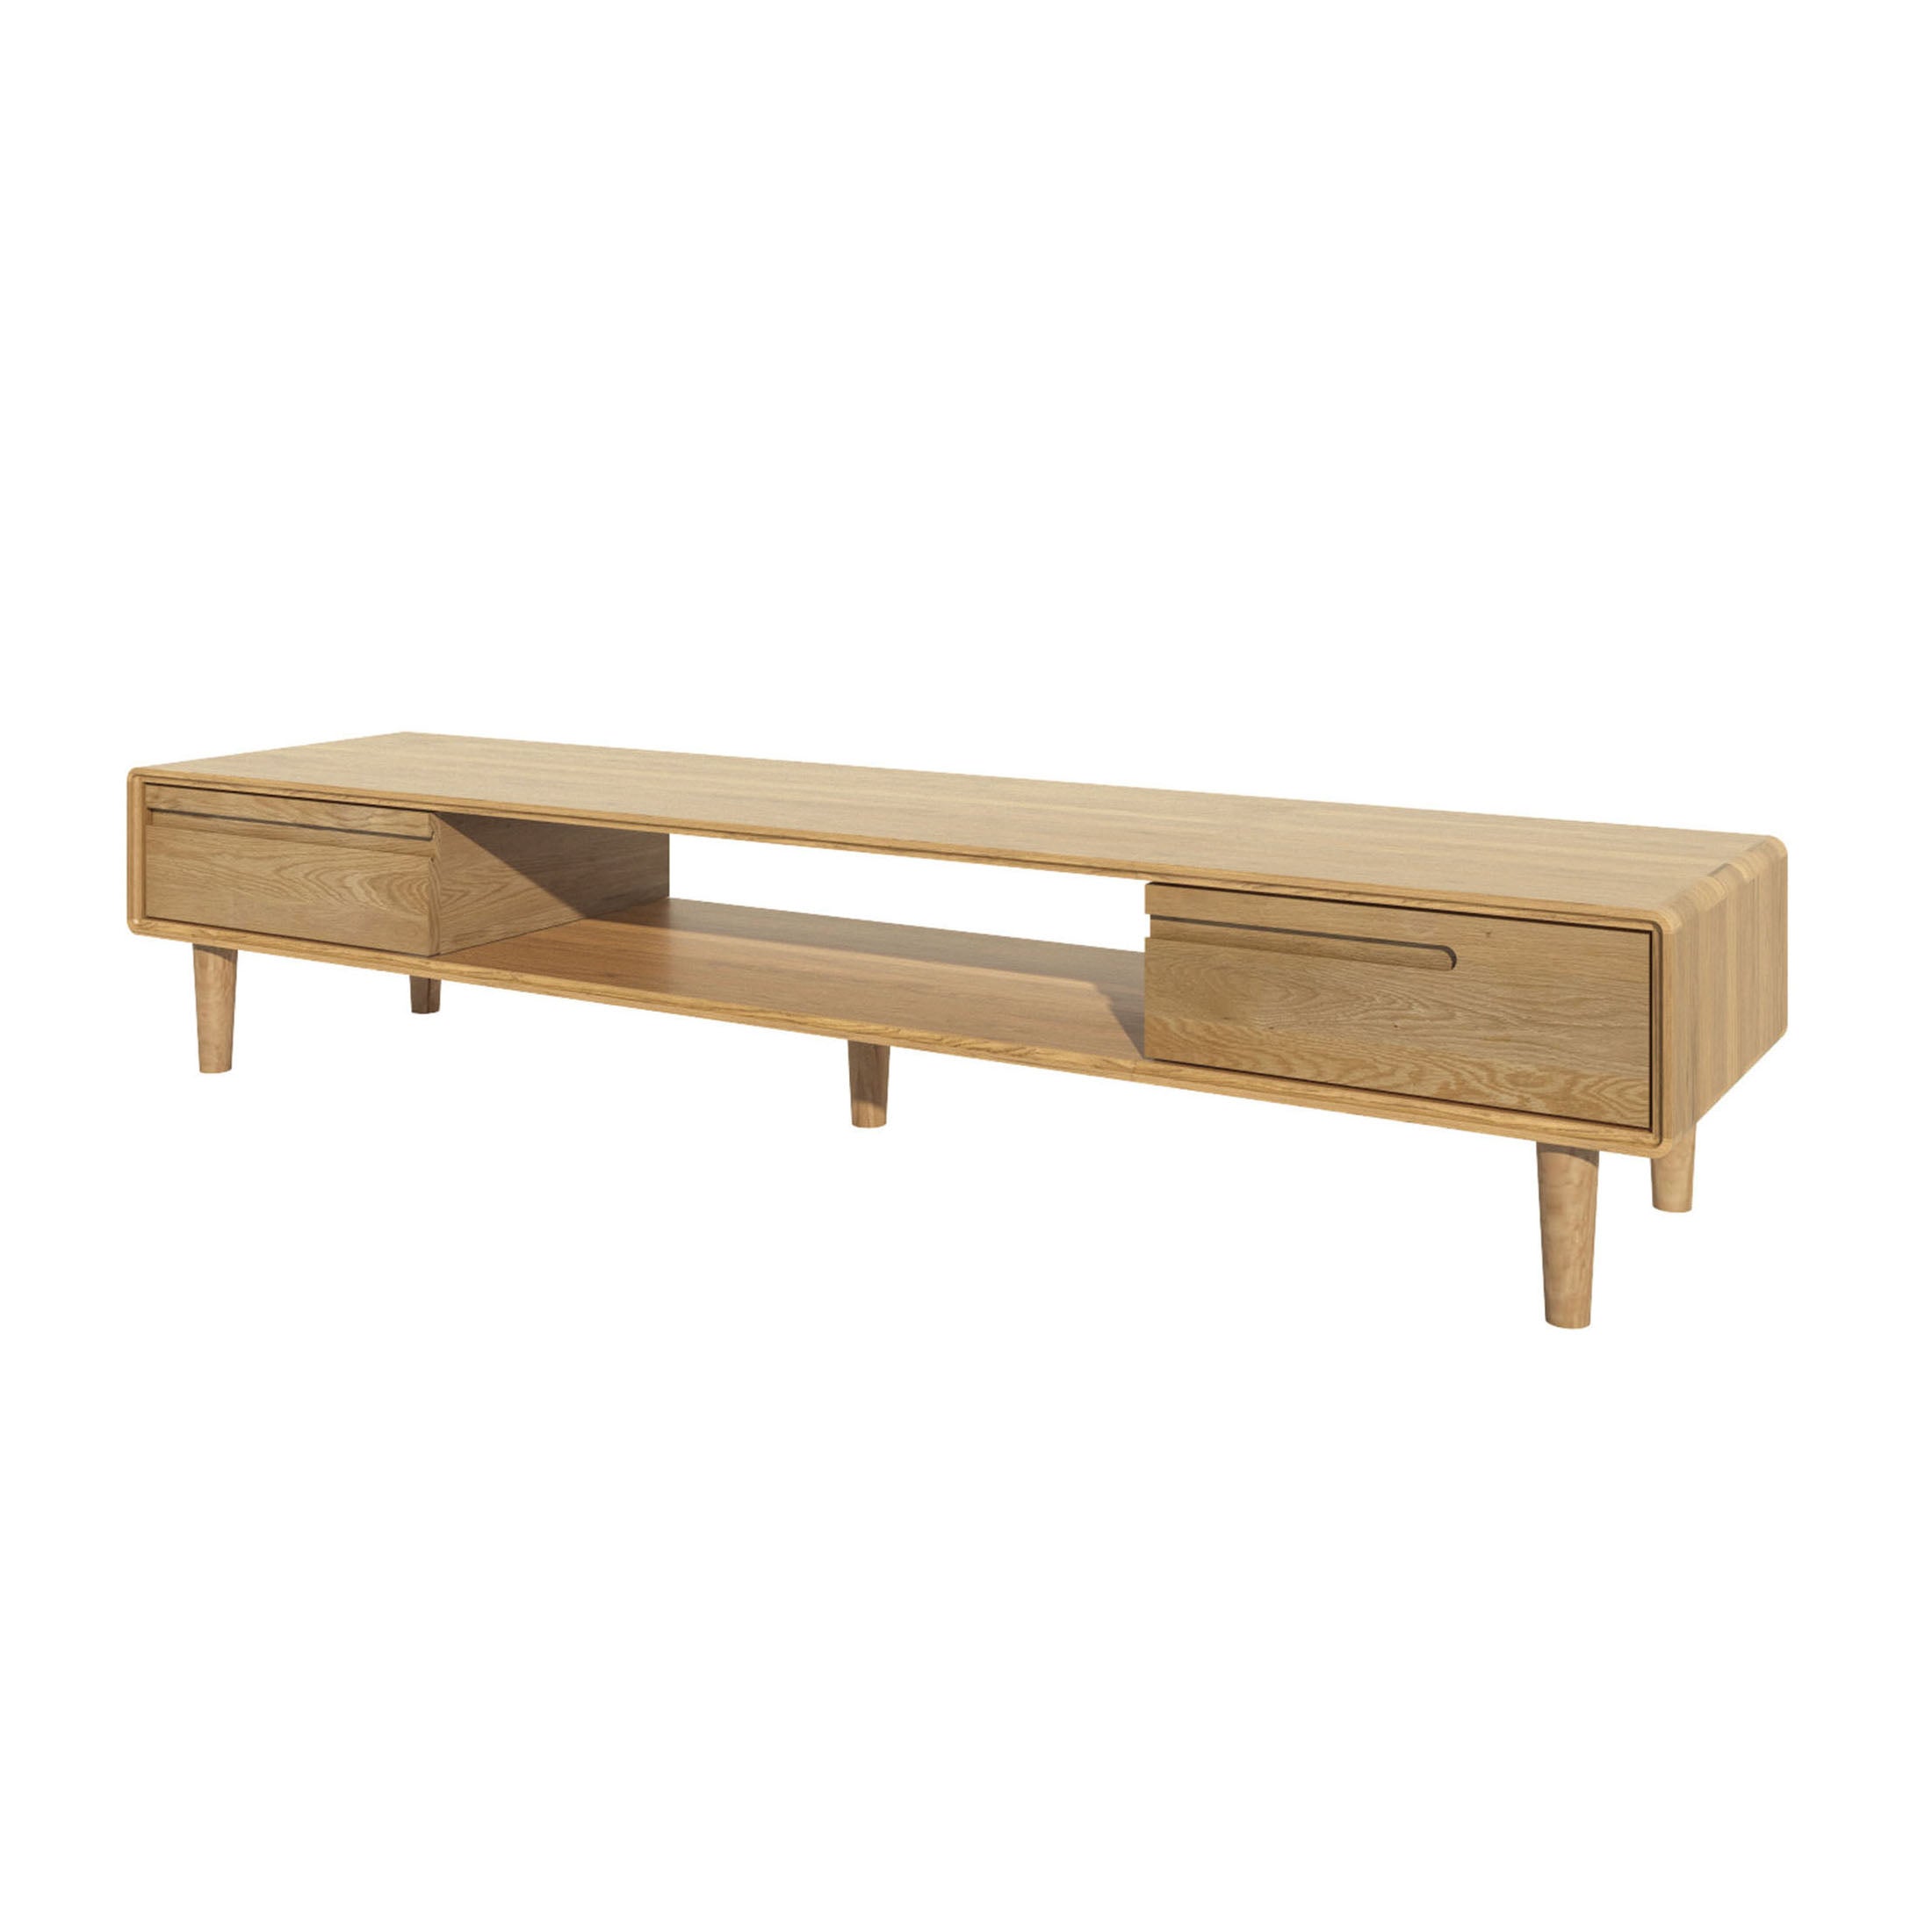 Nordic Scandic Oak Furniture, wide TV unit - from Top Secret Furniture